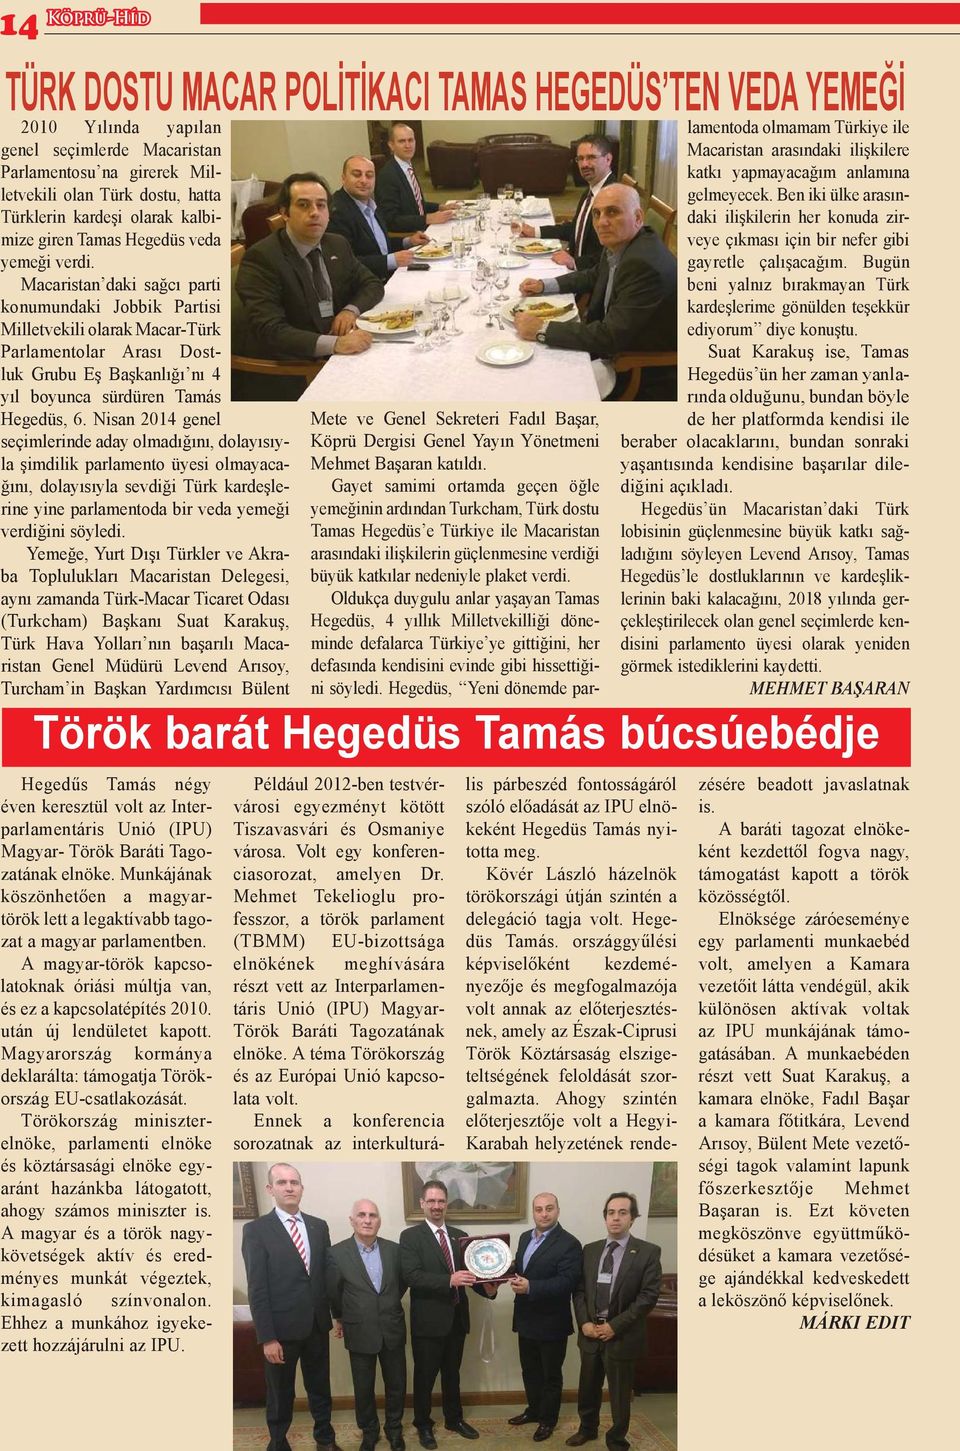 Macaristan daki sağcı parti konumundaki Jobbik Partisi Milletvekili olarak Macar-Türk Parlamentolar Arası Dostluk Grubu Eş Başkanlığı nı 4 yıl boyunca sürdüren Tamás Hegedüs, 6.